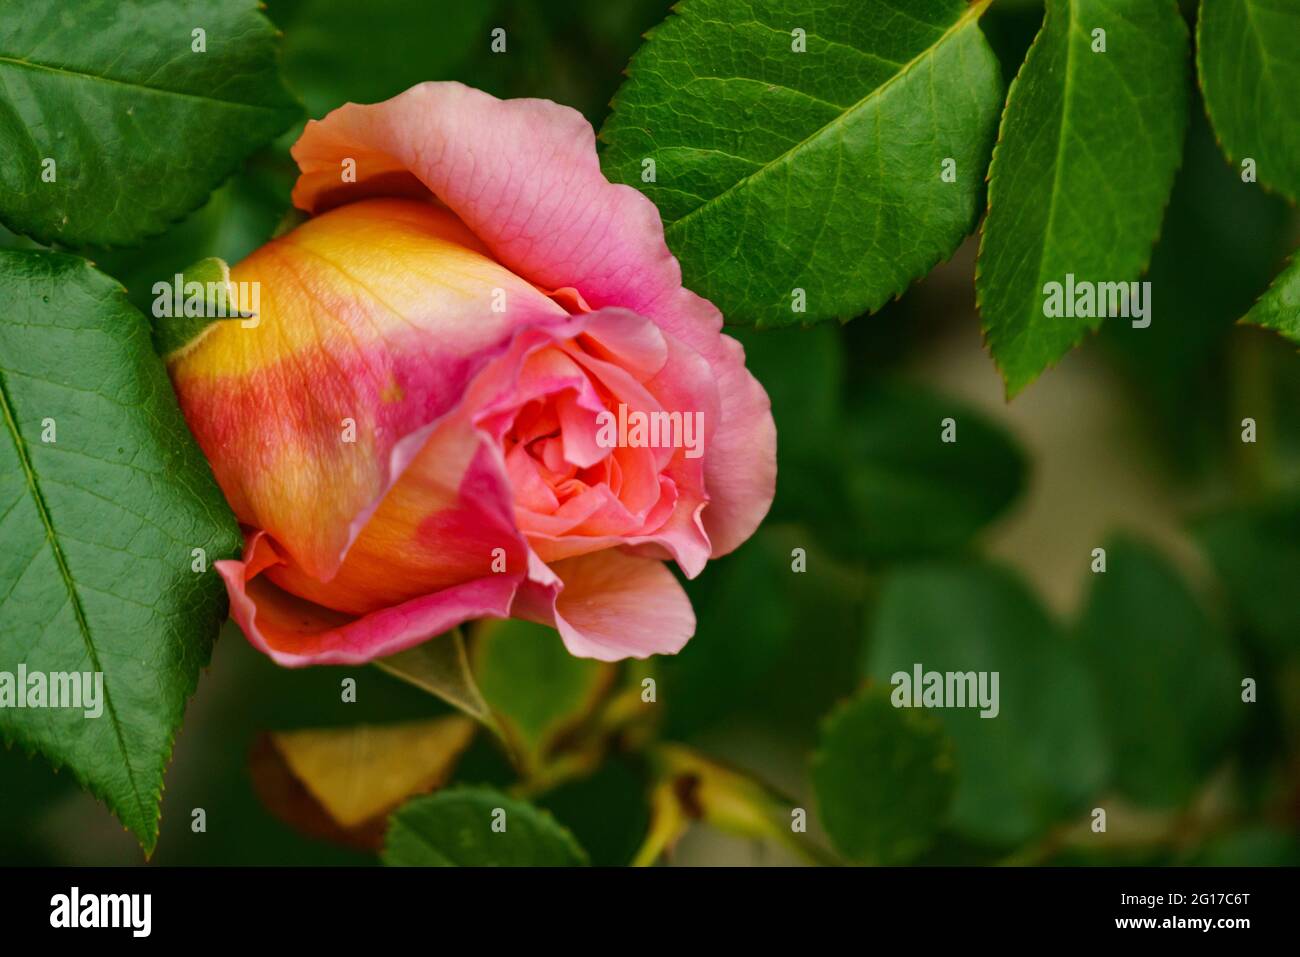 rote Rose am Rosenstock vor einer Hauswand, orange, rosa, gelb mehrfarbig im grünen Blättermeer. Morgentau auf Rosenknospe. Symbol für Liebe und Treue Stockfoto